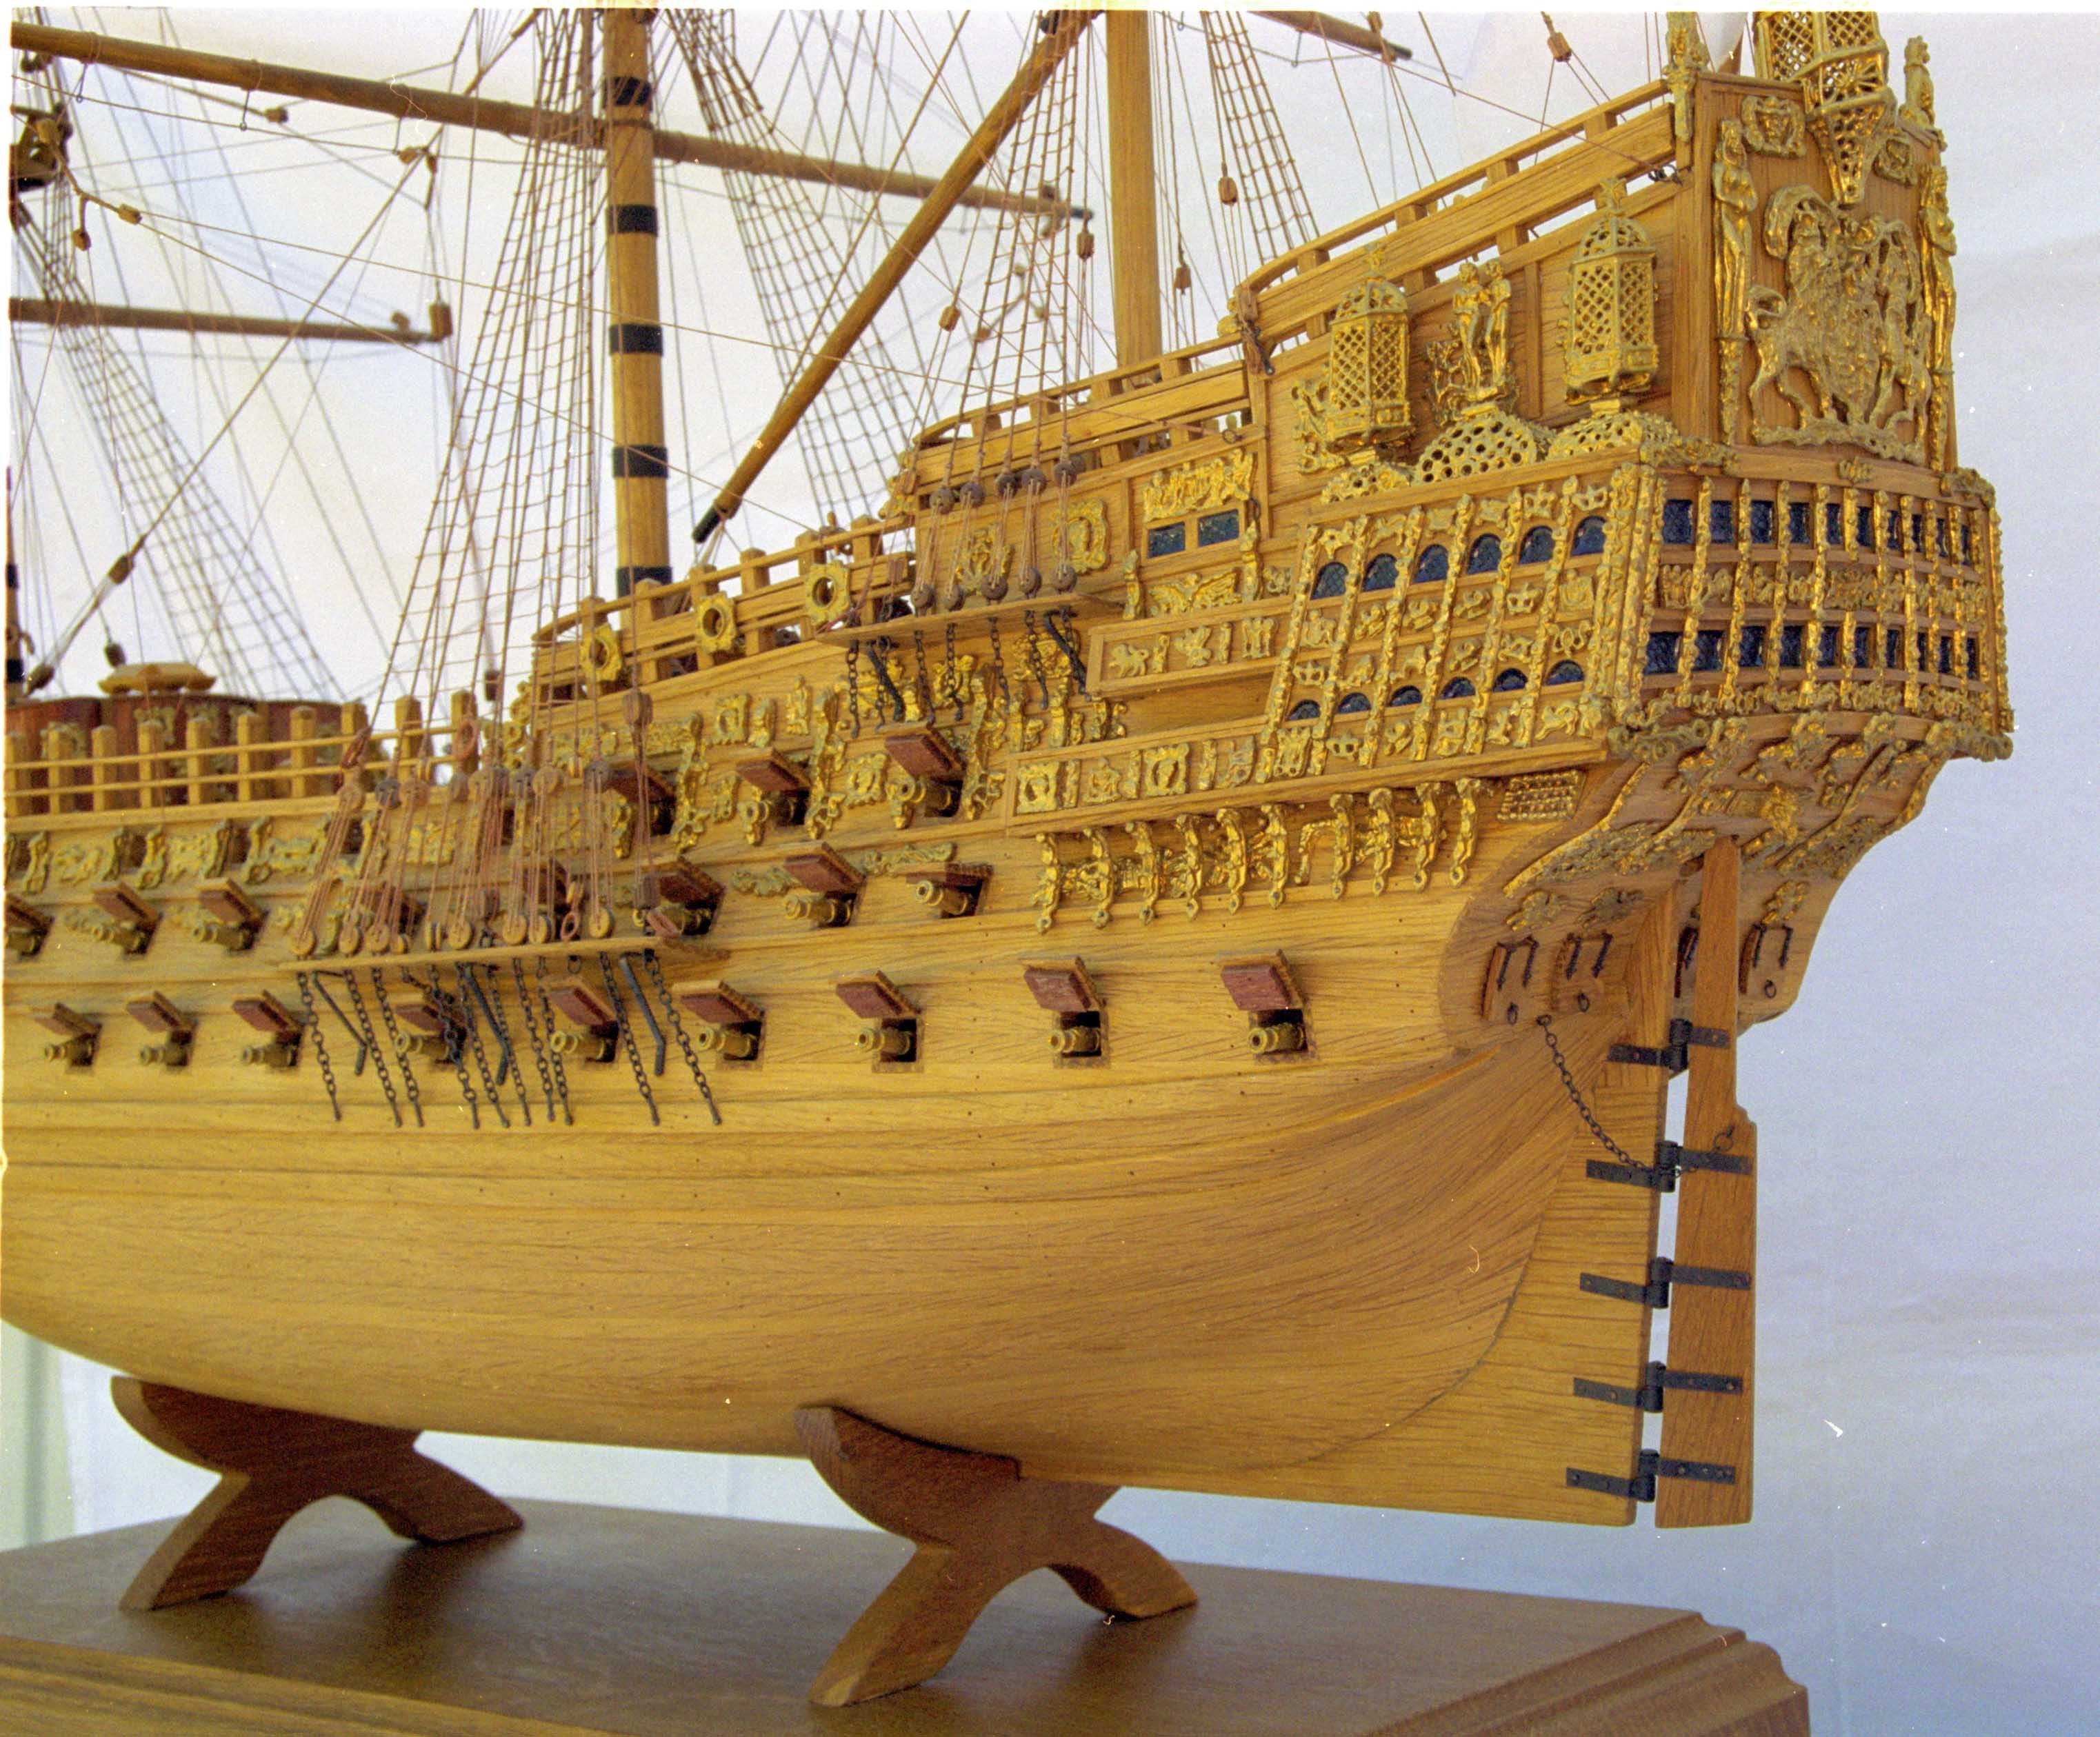 Сборка деревянных кораблей